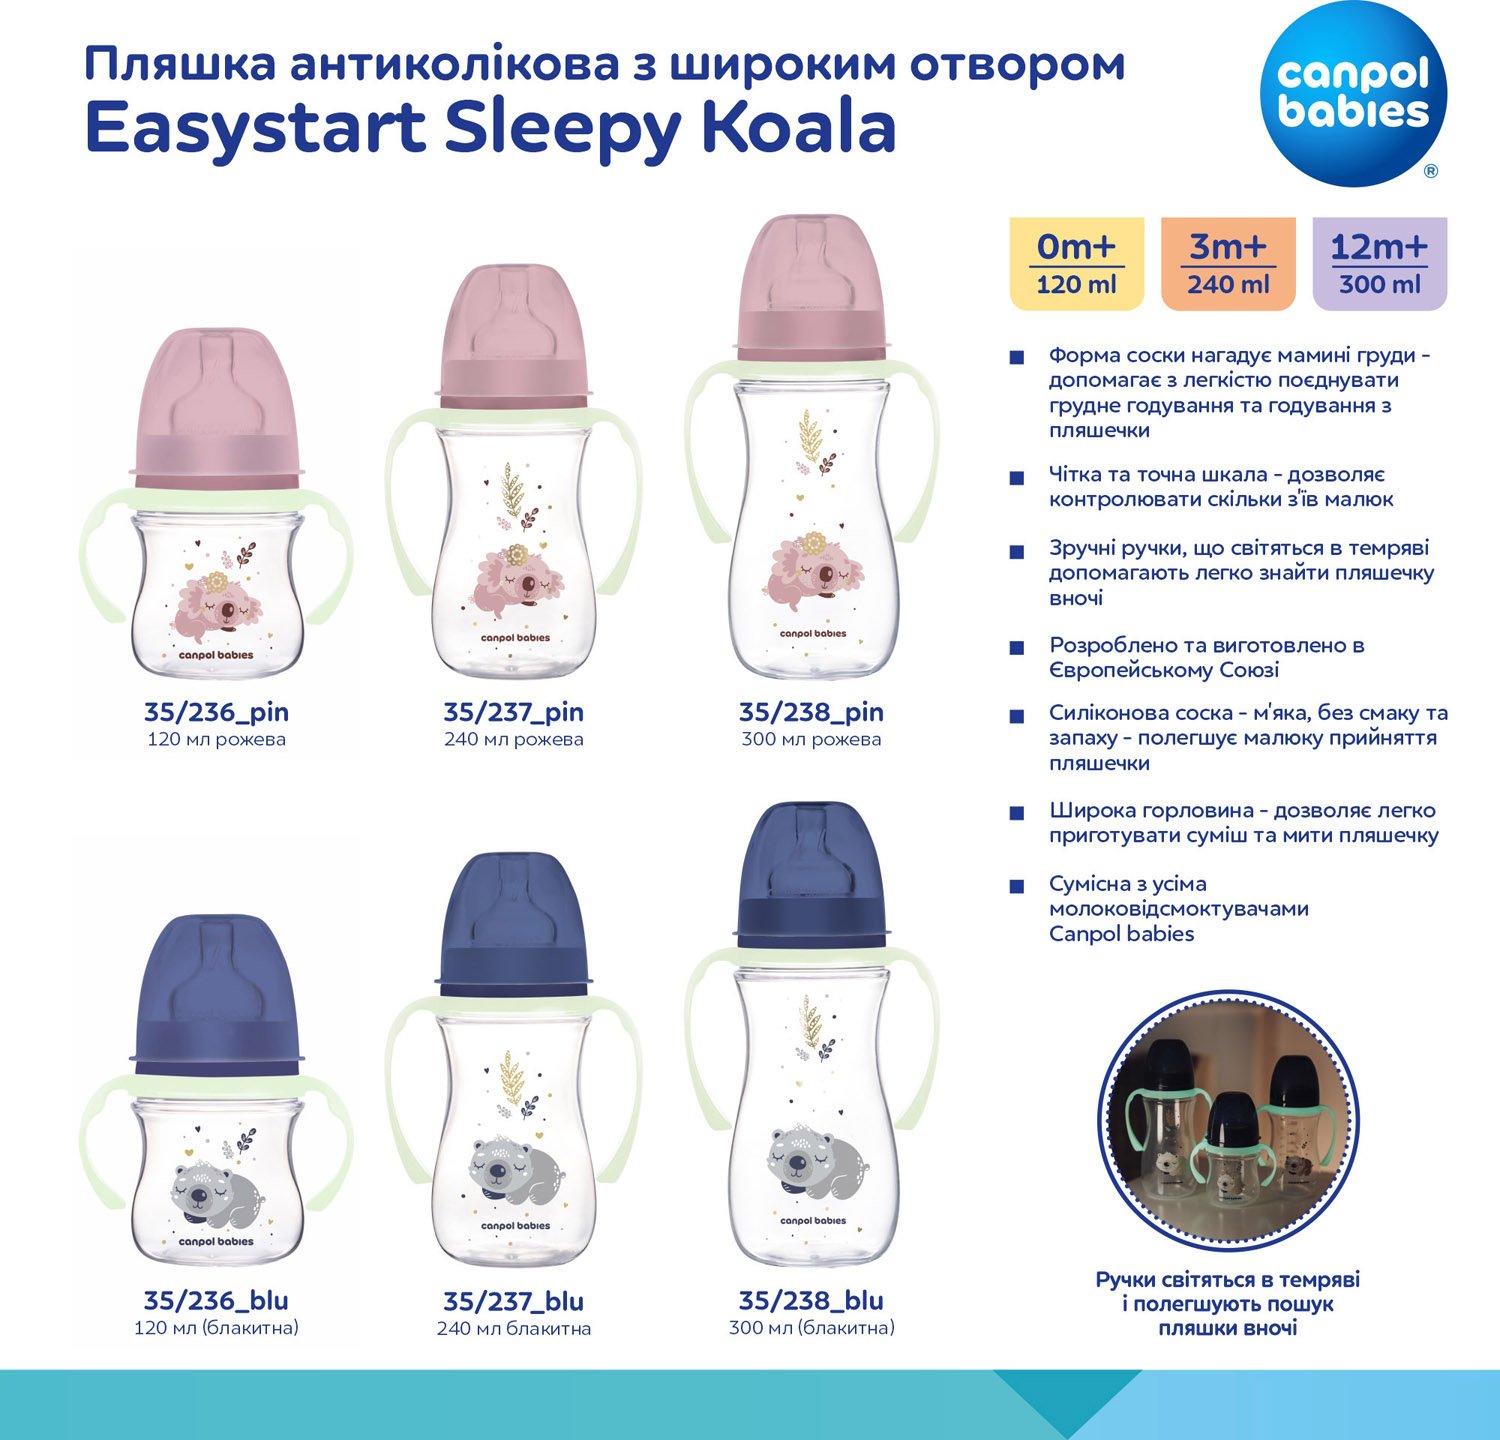 Бутылочка для кормления Canpol babies Easystart Sleepy Koala, антиколиковая, 120 мл, голубая (35/236_blu) - фото 11